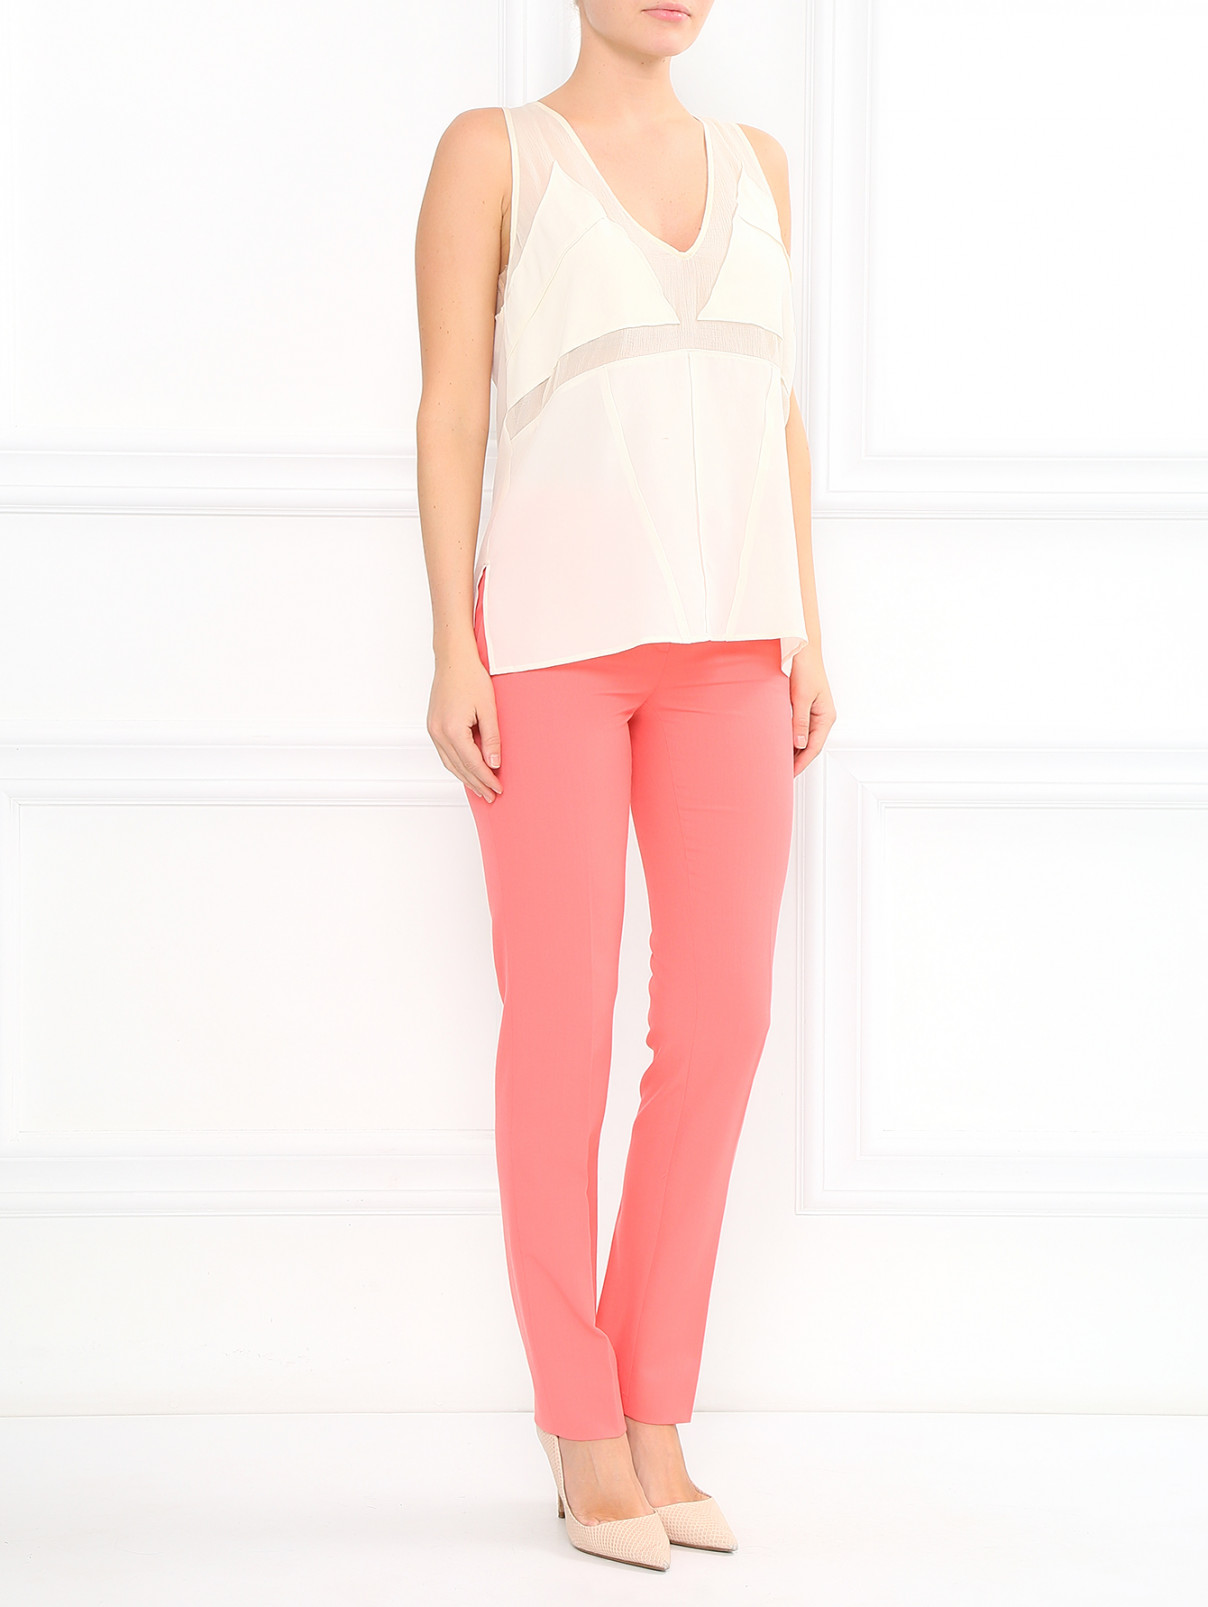 Узкие брюки со стрелками Moschino Cheap&Chic  –  Модель Общий вид  – Цвет:  Розовый